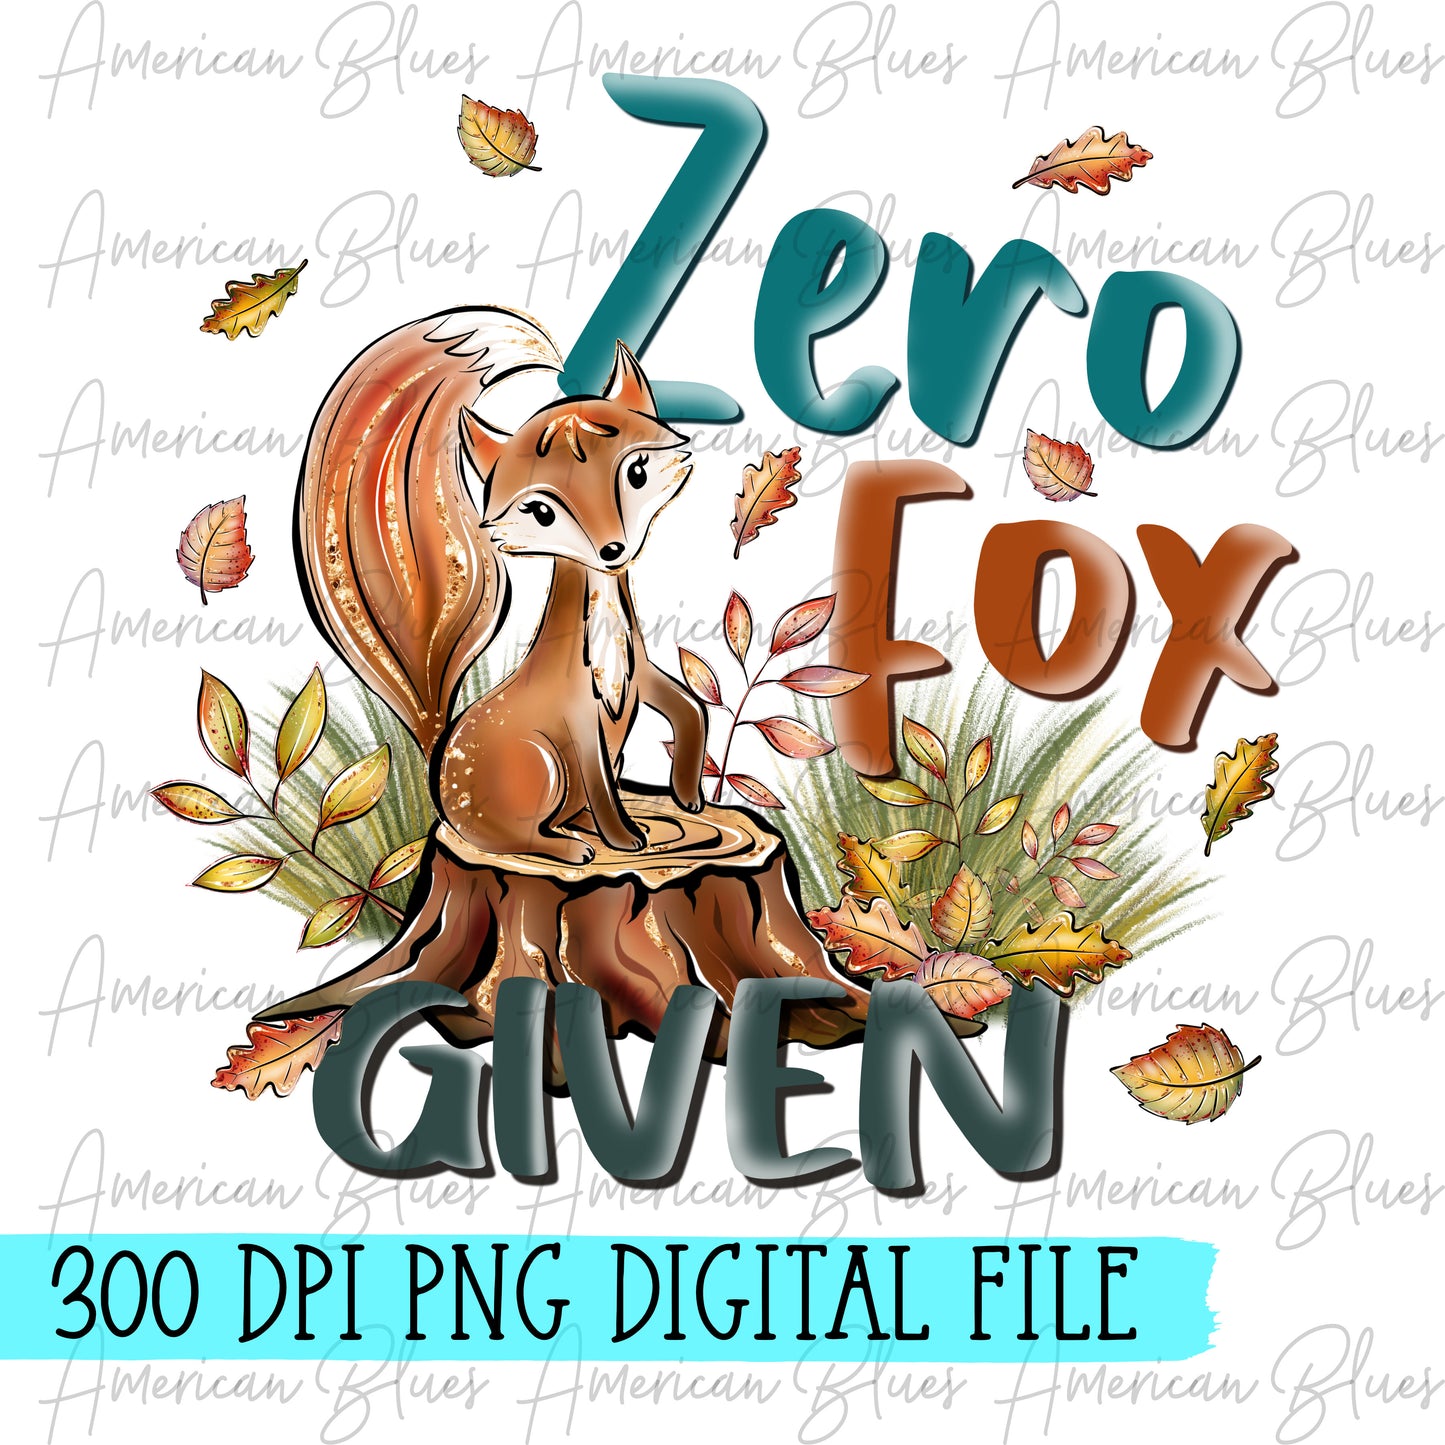 Zero fox given-digital